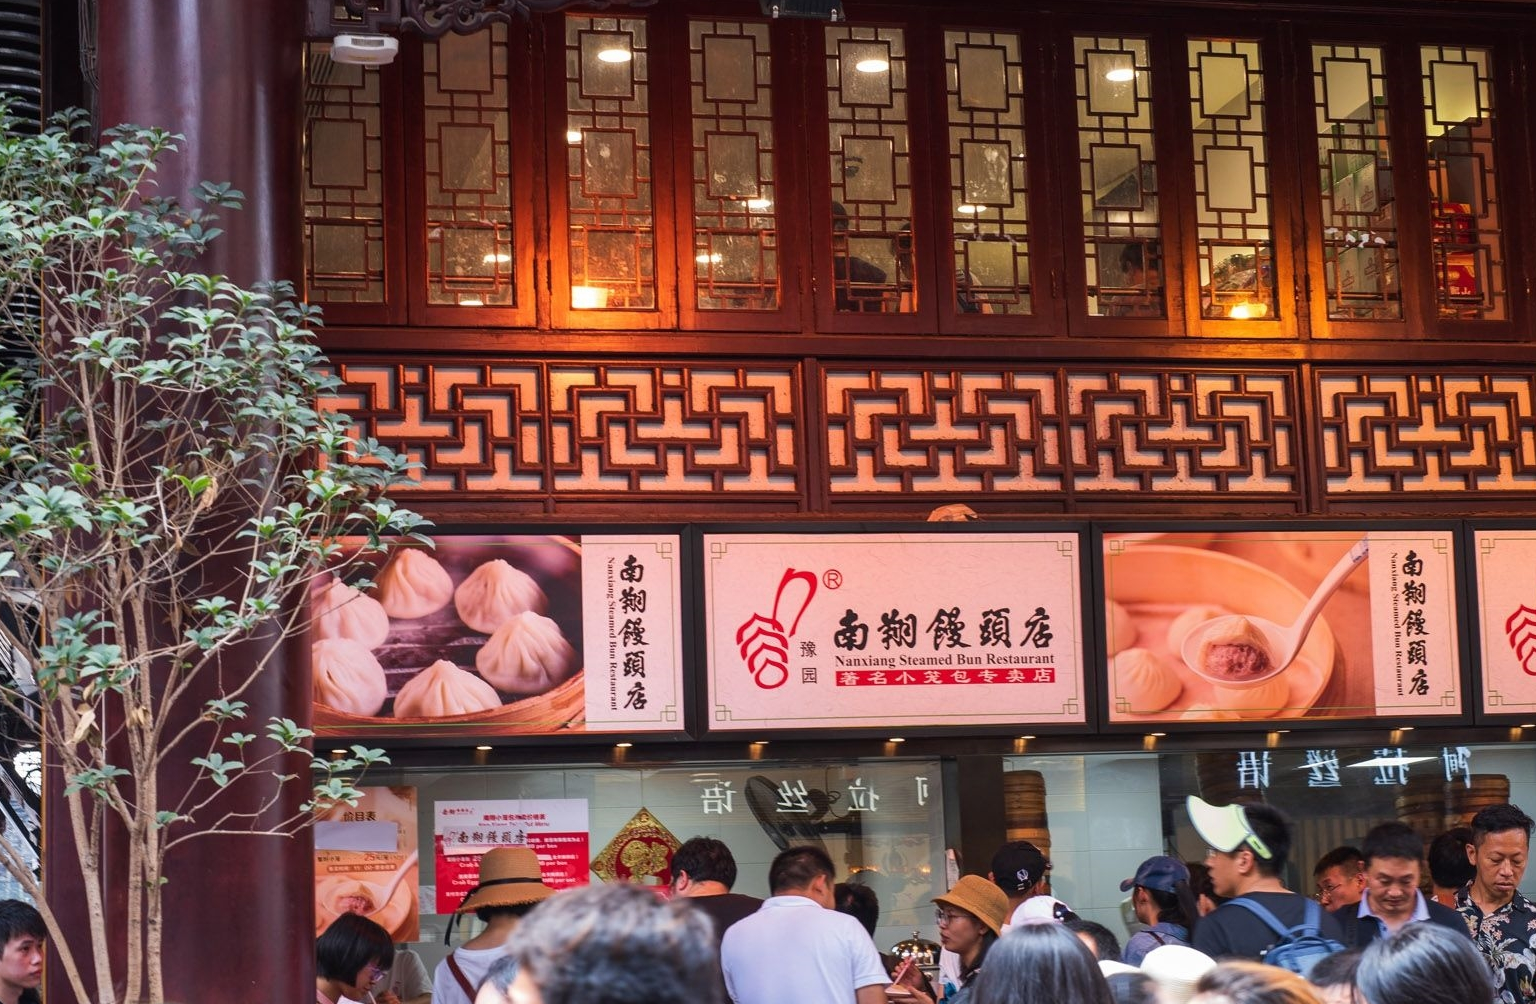 中国名声最臭3条小吃街,上海城隍庙上榜,网友:专坑外地人